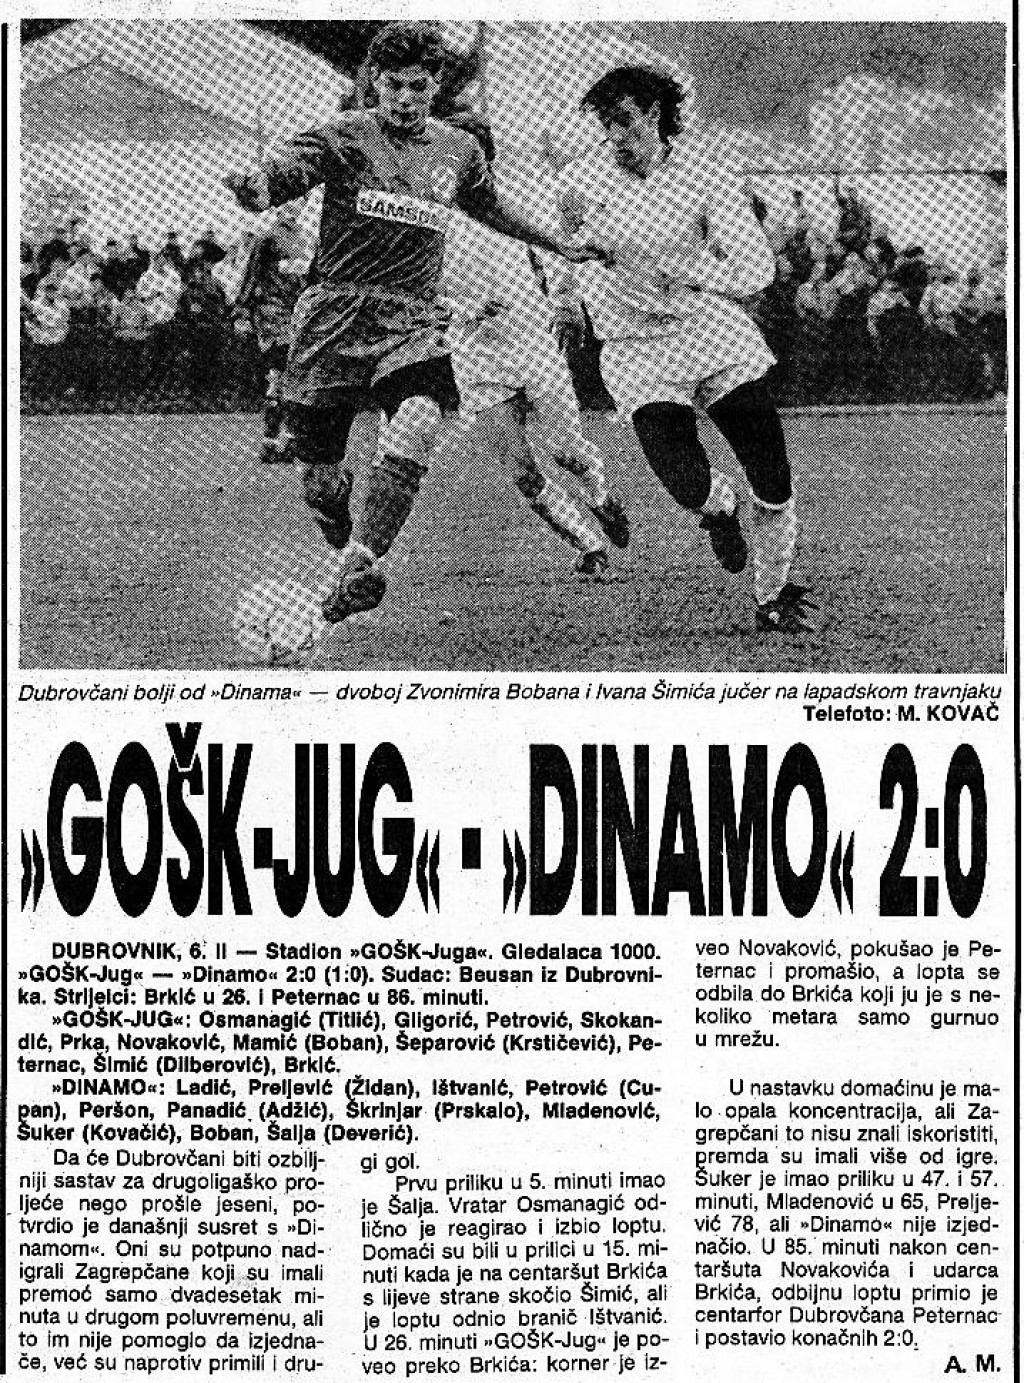 Tako je bilo 1991. godine - GOŠK Jug je na Lapadu, u pripremnim utakmicama za proljetni dio prvenstva, dobio Dinamo na Lapadu s 2:0